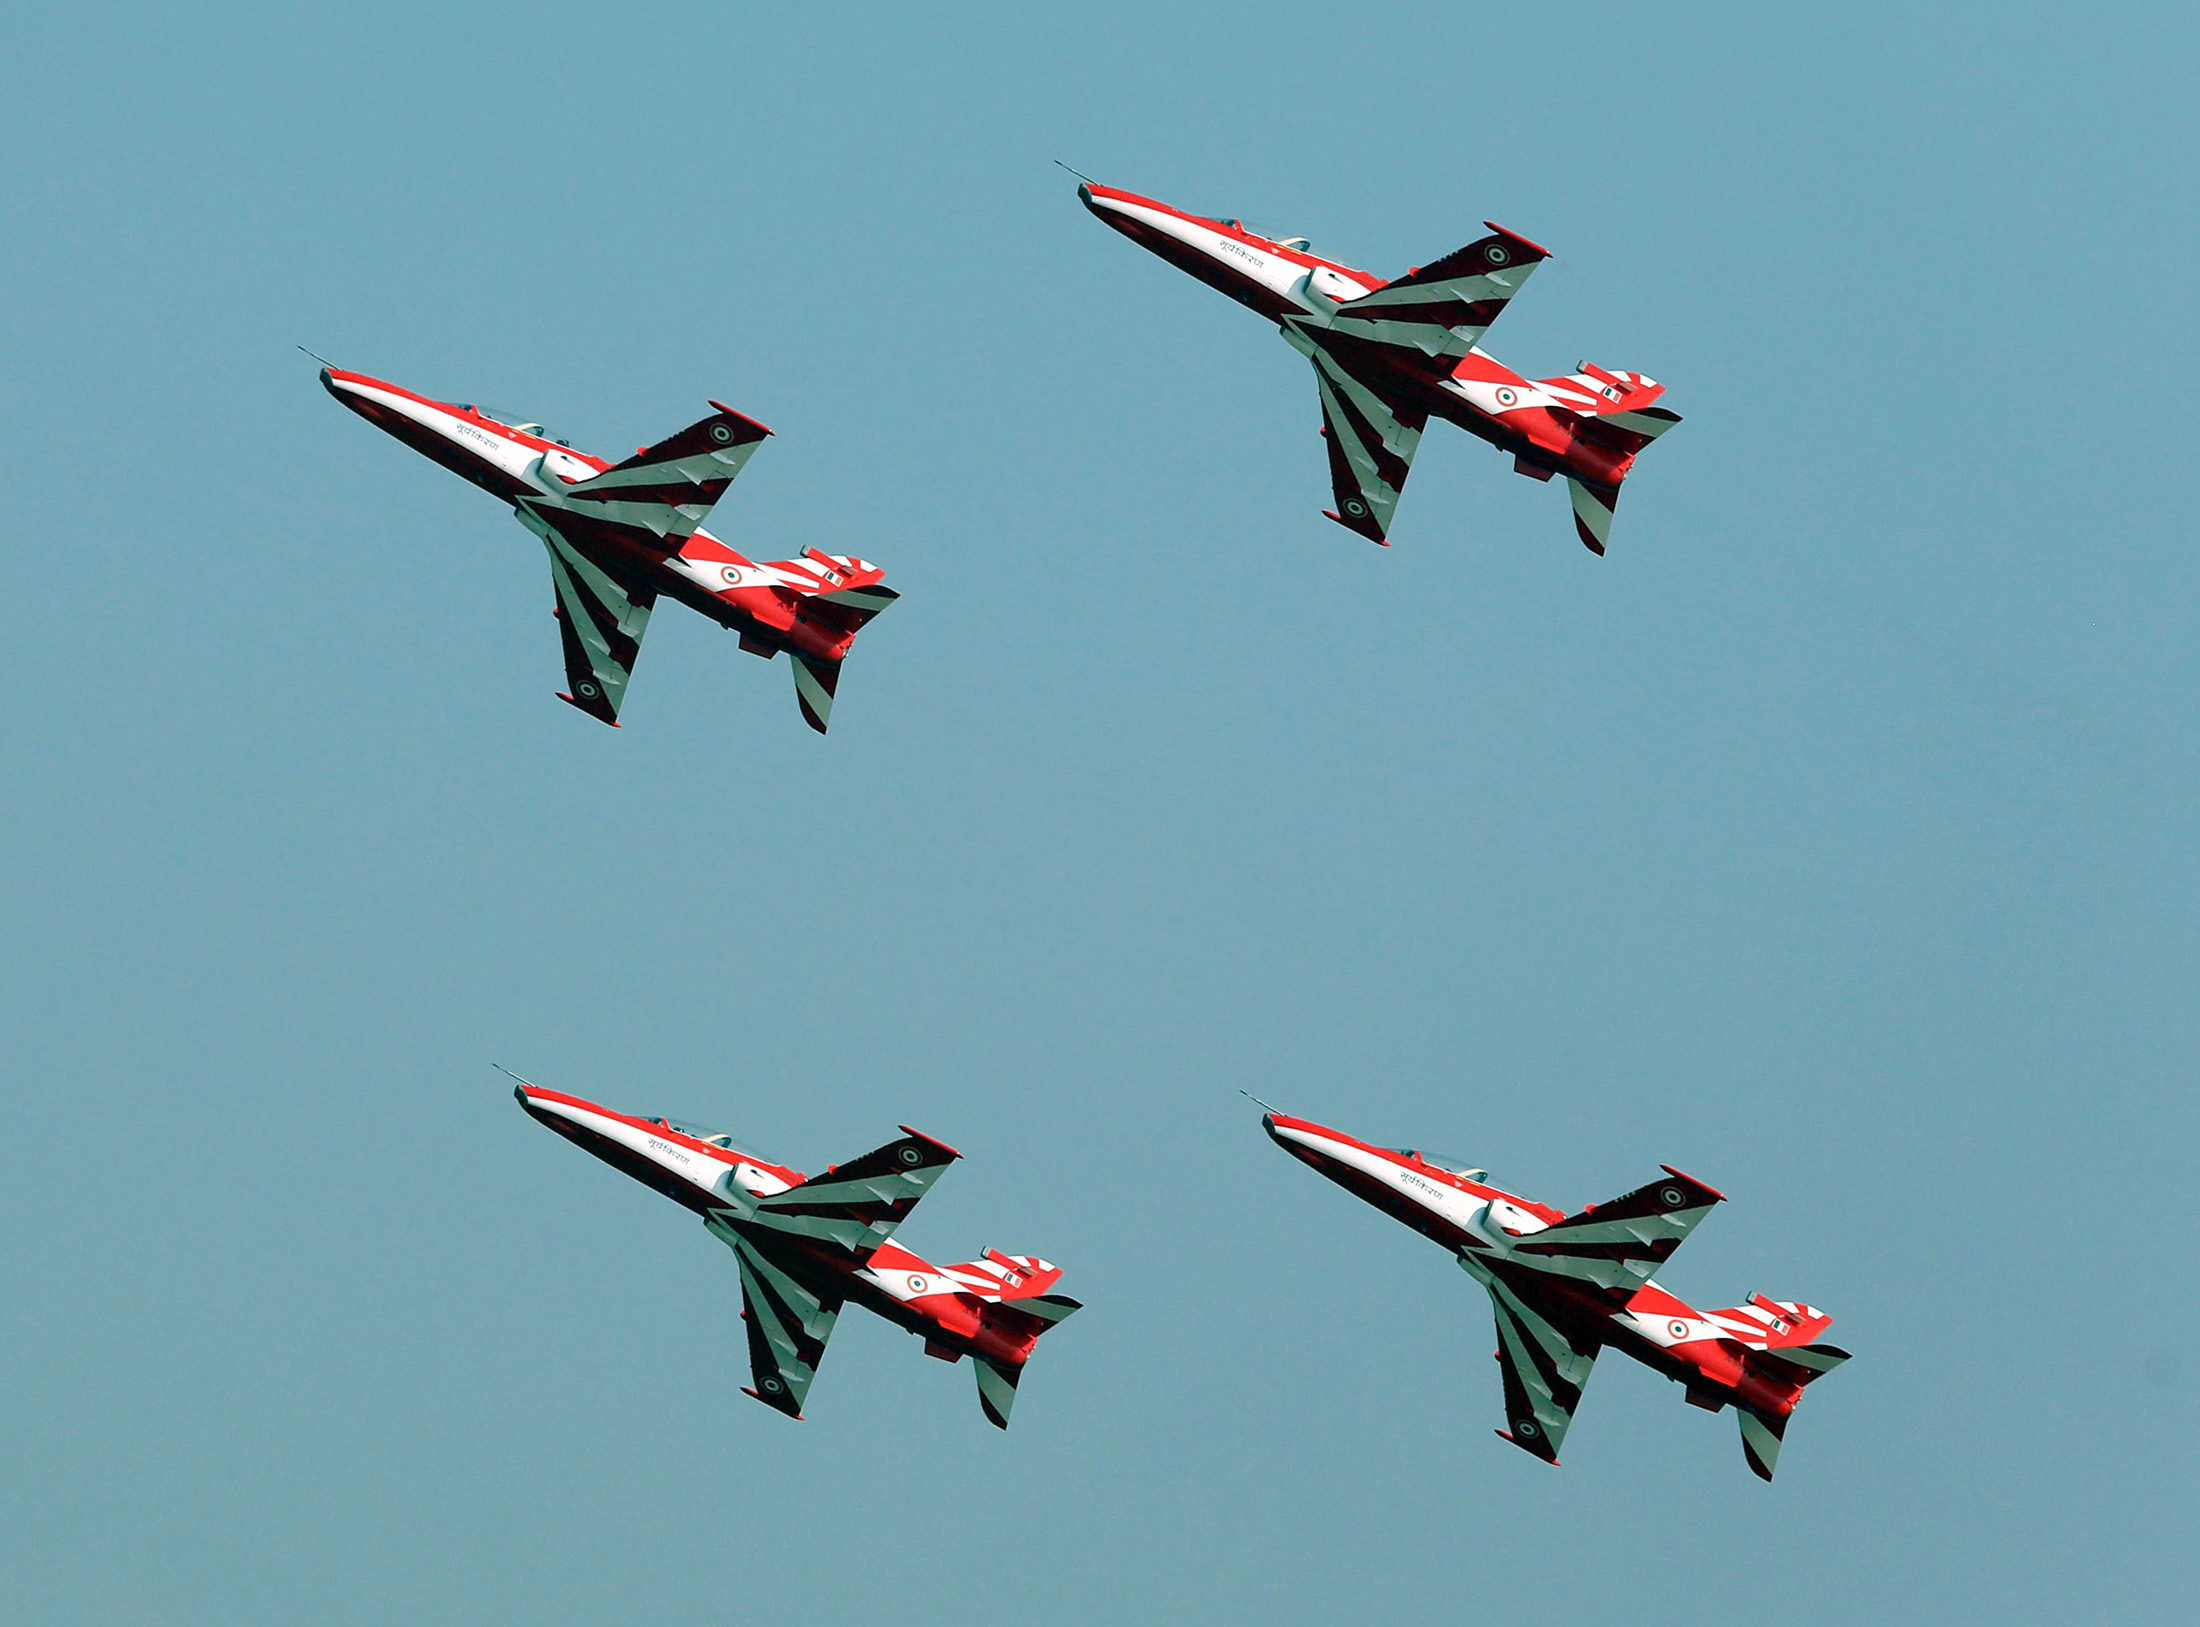 Surya_Kiran_at_Air_Force_Day_parade_2015.jpg